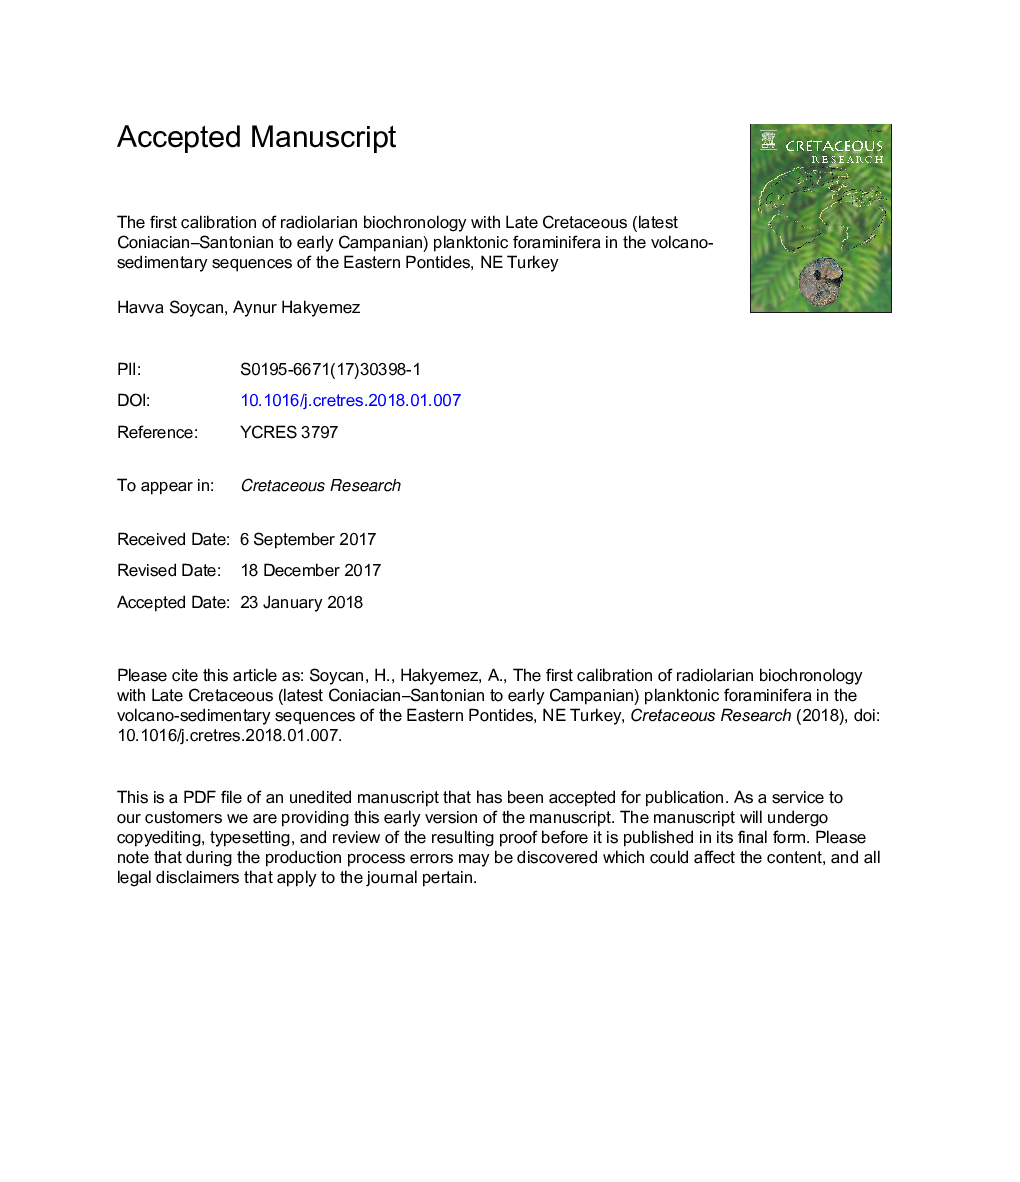 اولین کالیبراسیون زیست شناختی رادیولار با کرتاسه پسین (آخرین کانیاسیان-سانتونیان به کمپانی پیشین) فرامینیفر پلانکتونی در توالی های رسوبی آتشفشان پونتدی شرقی، شمال غربی ترکیه